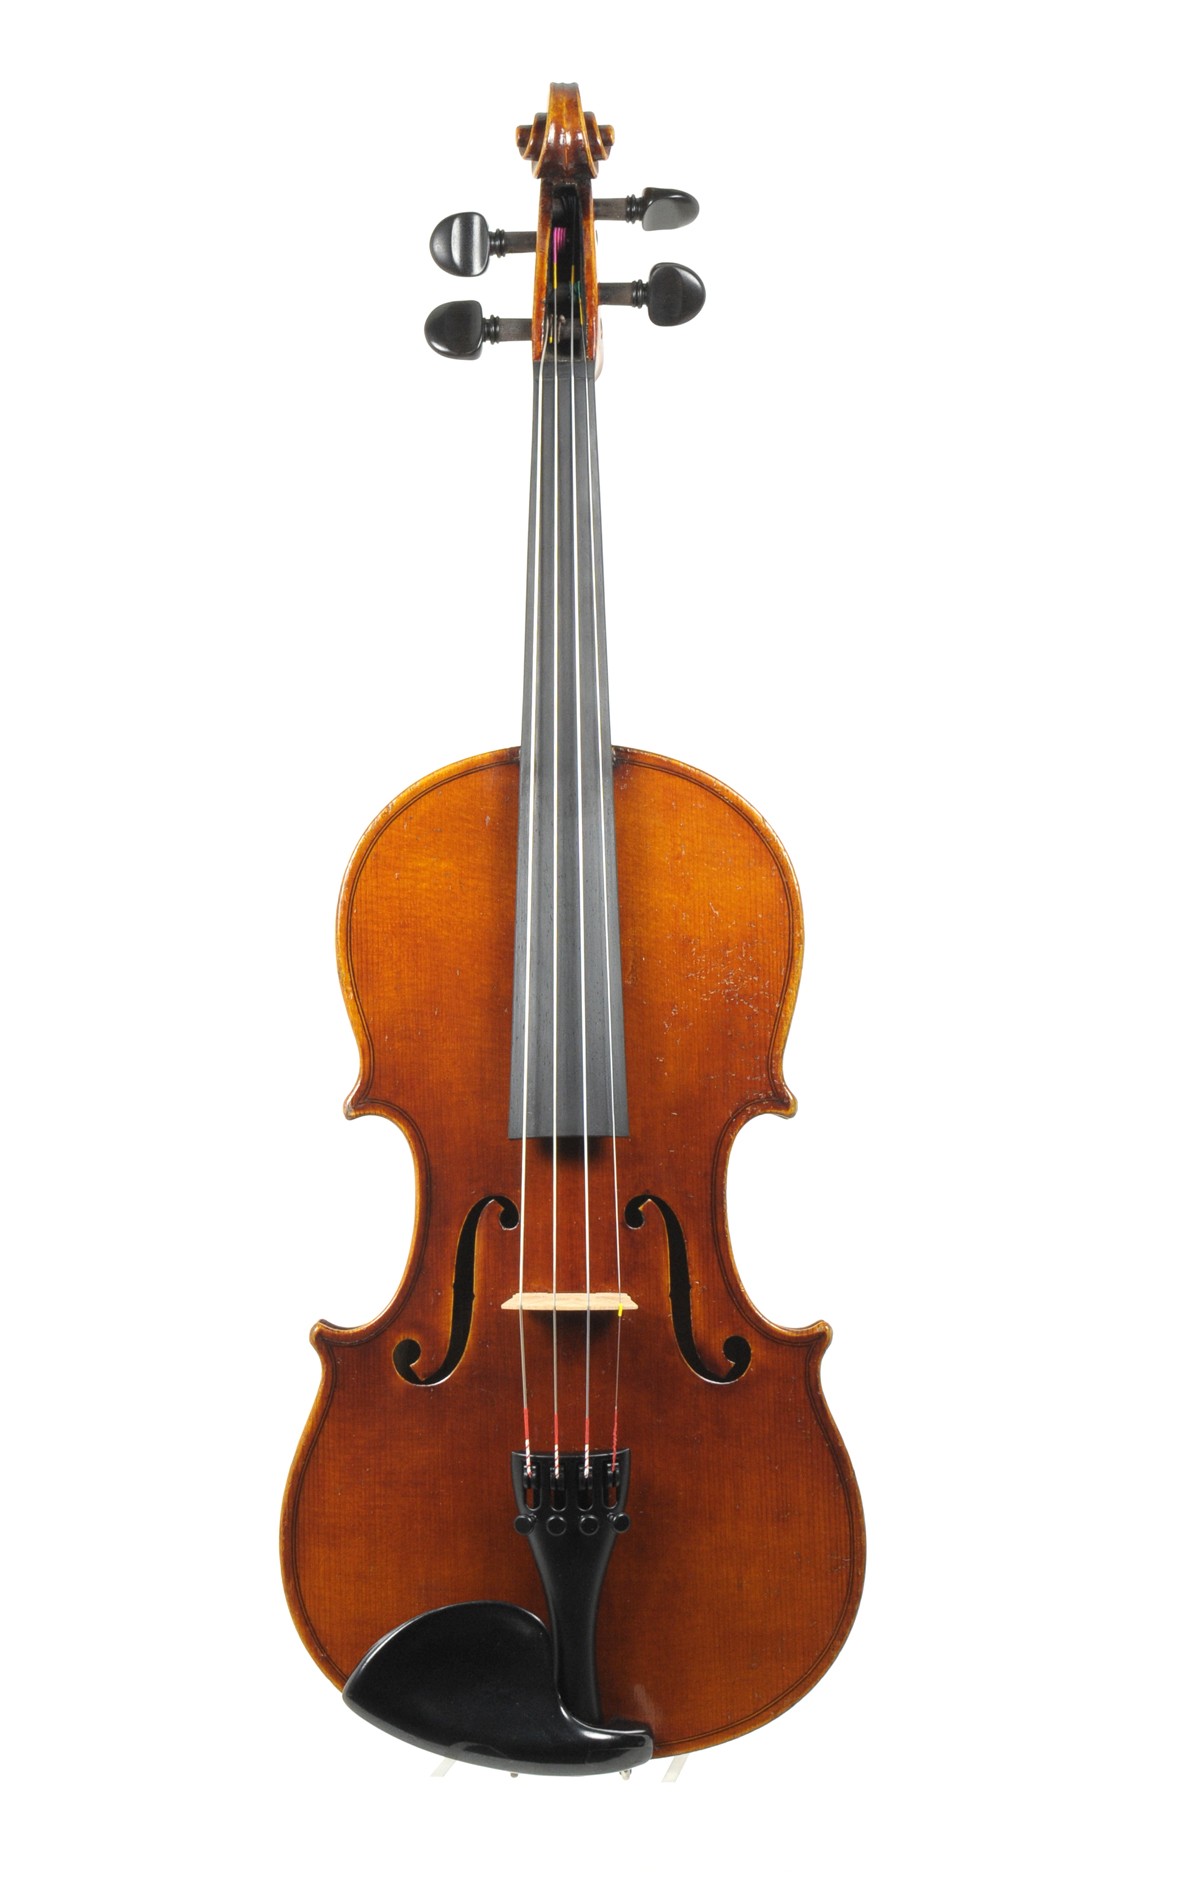 3/4 - Markneukirchen violin, Schuster & Co.